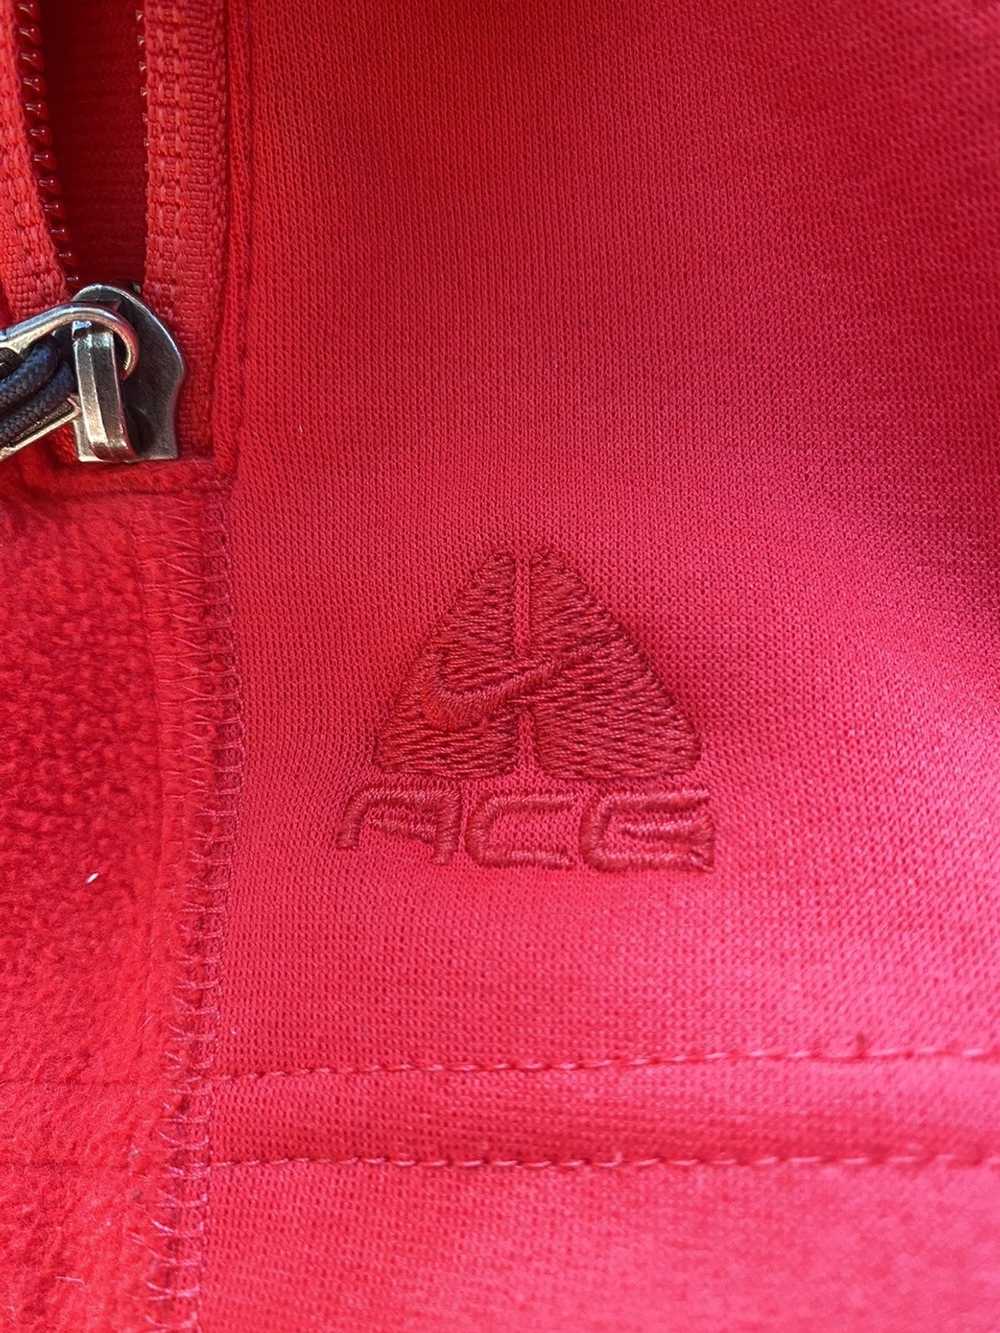 Nike ACG Vintage Nike ACG Fleece Jacket - image 2